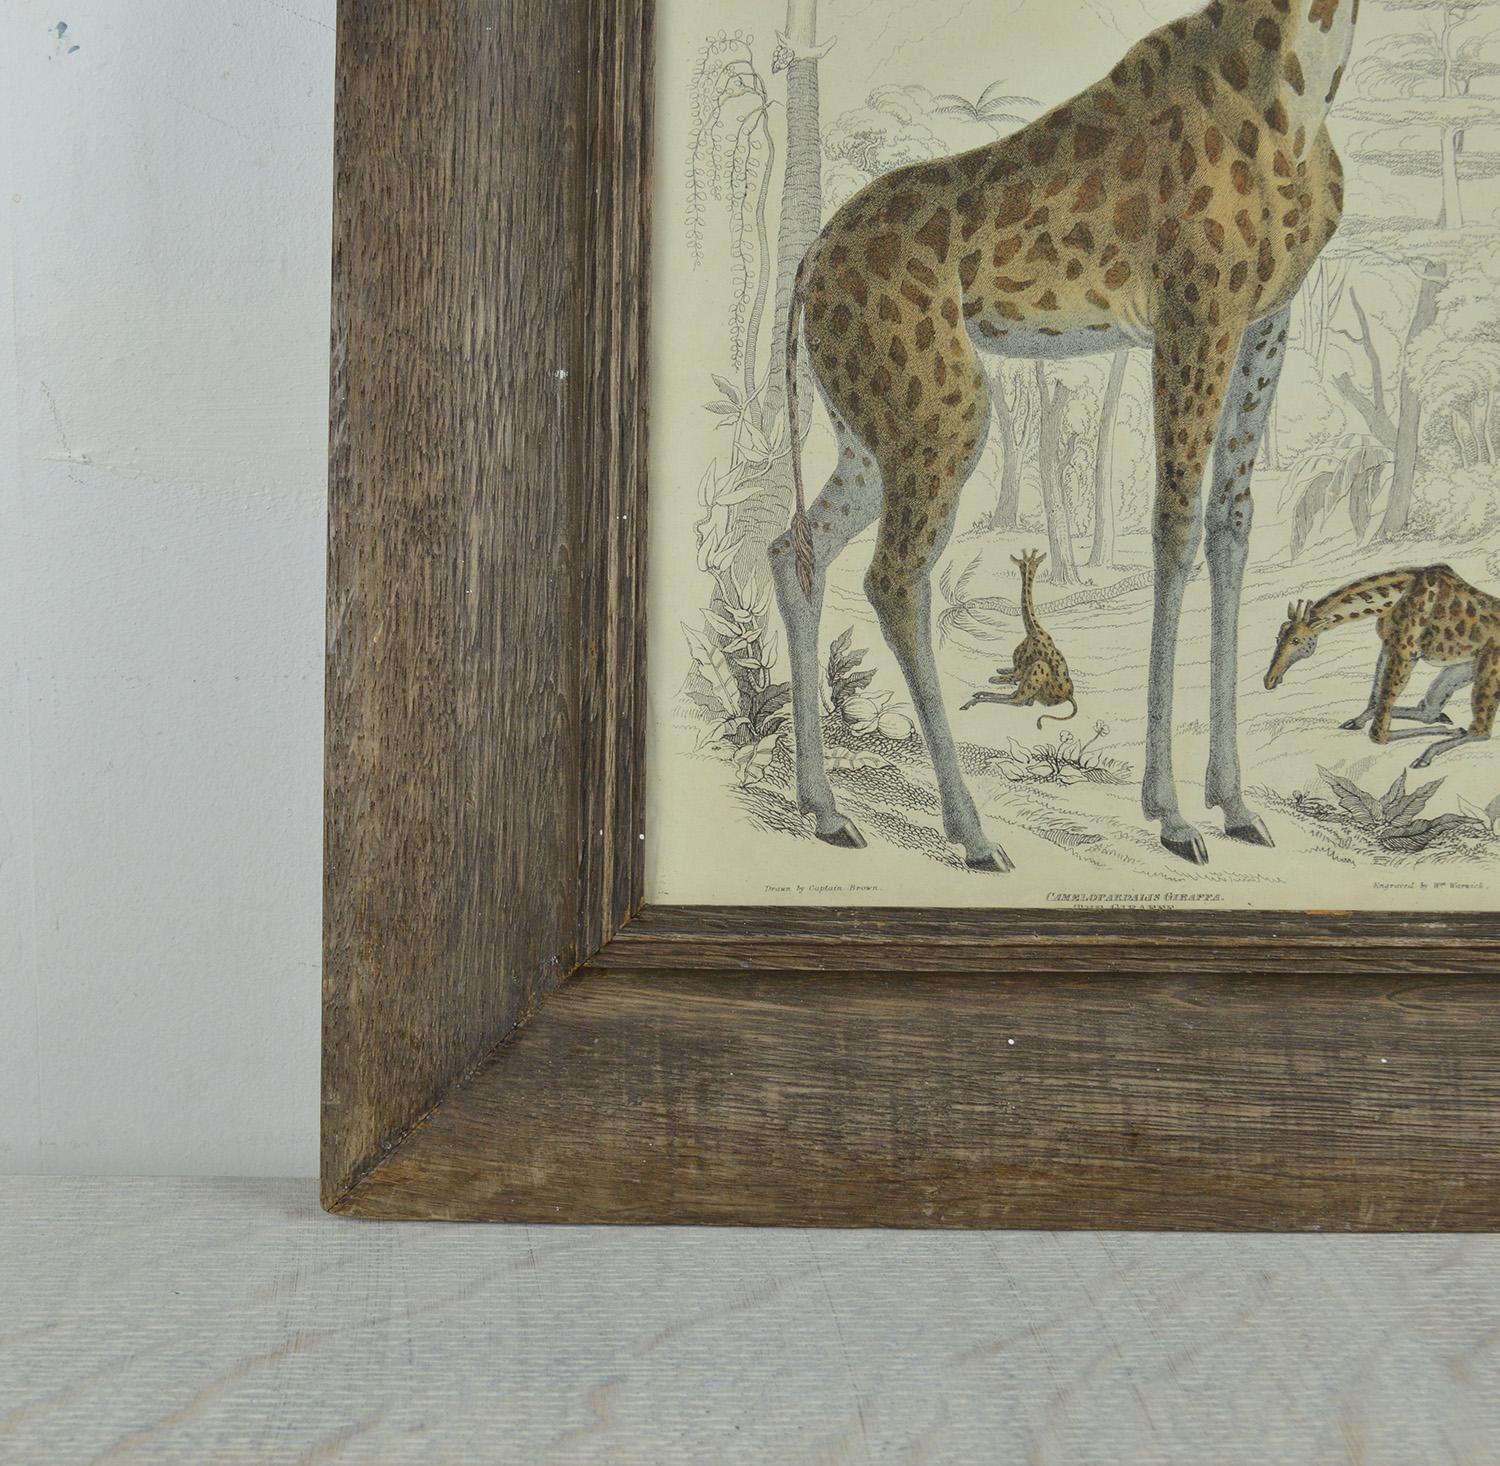 Folk Art Original Antique Print of a Giraffe, 1835